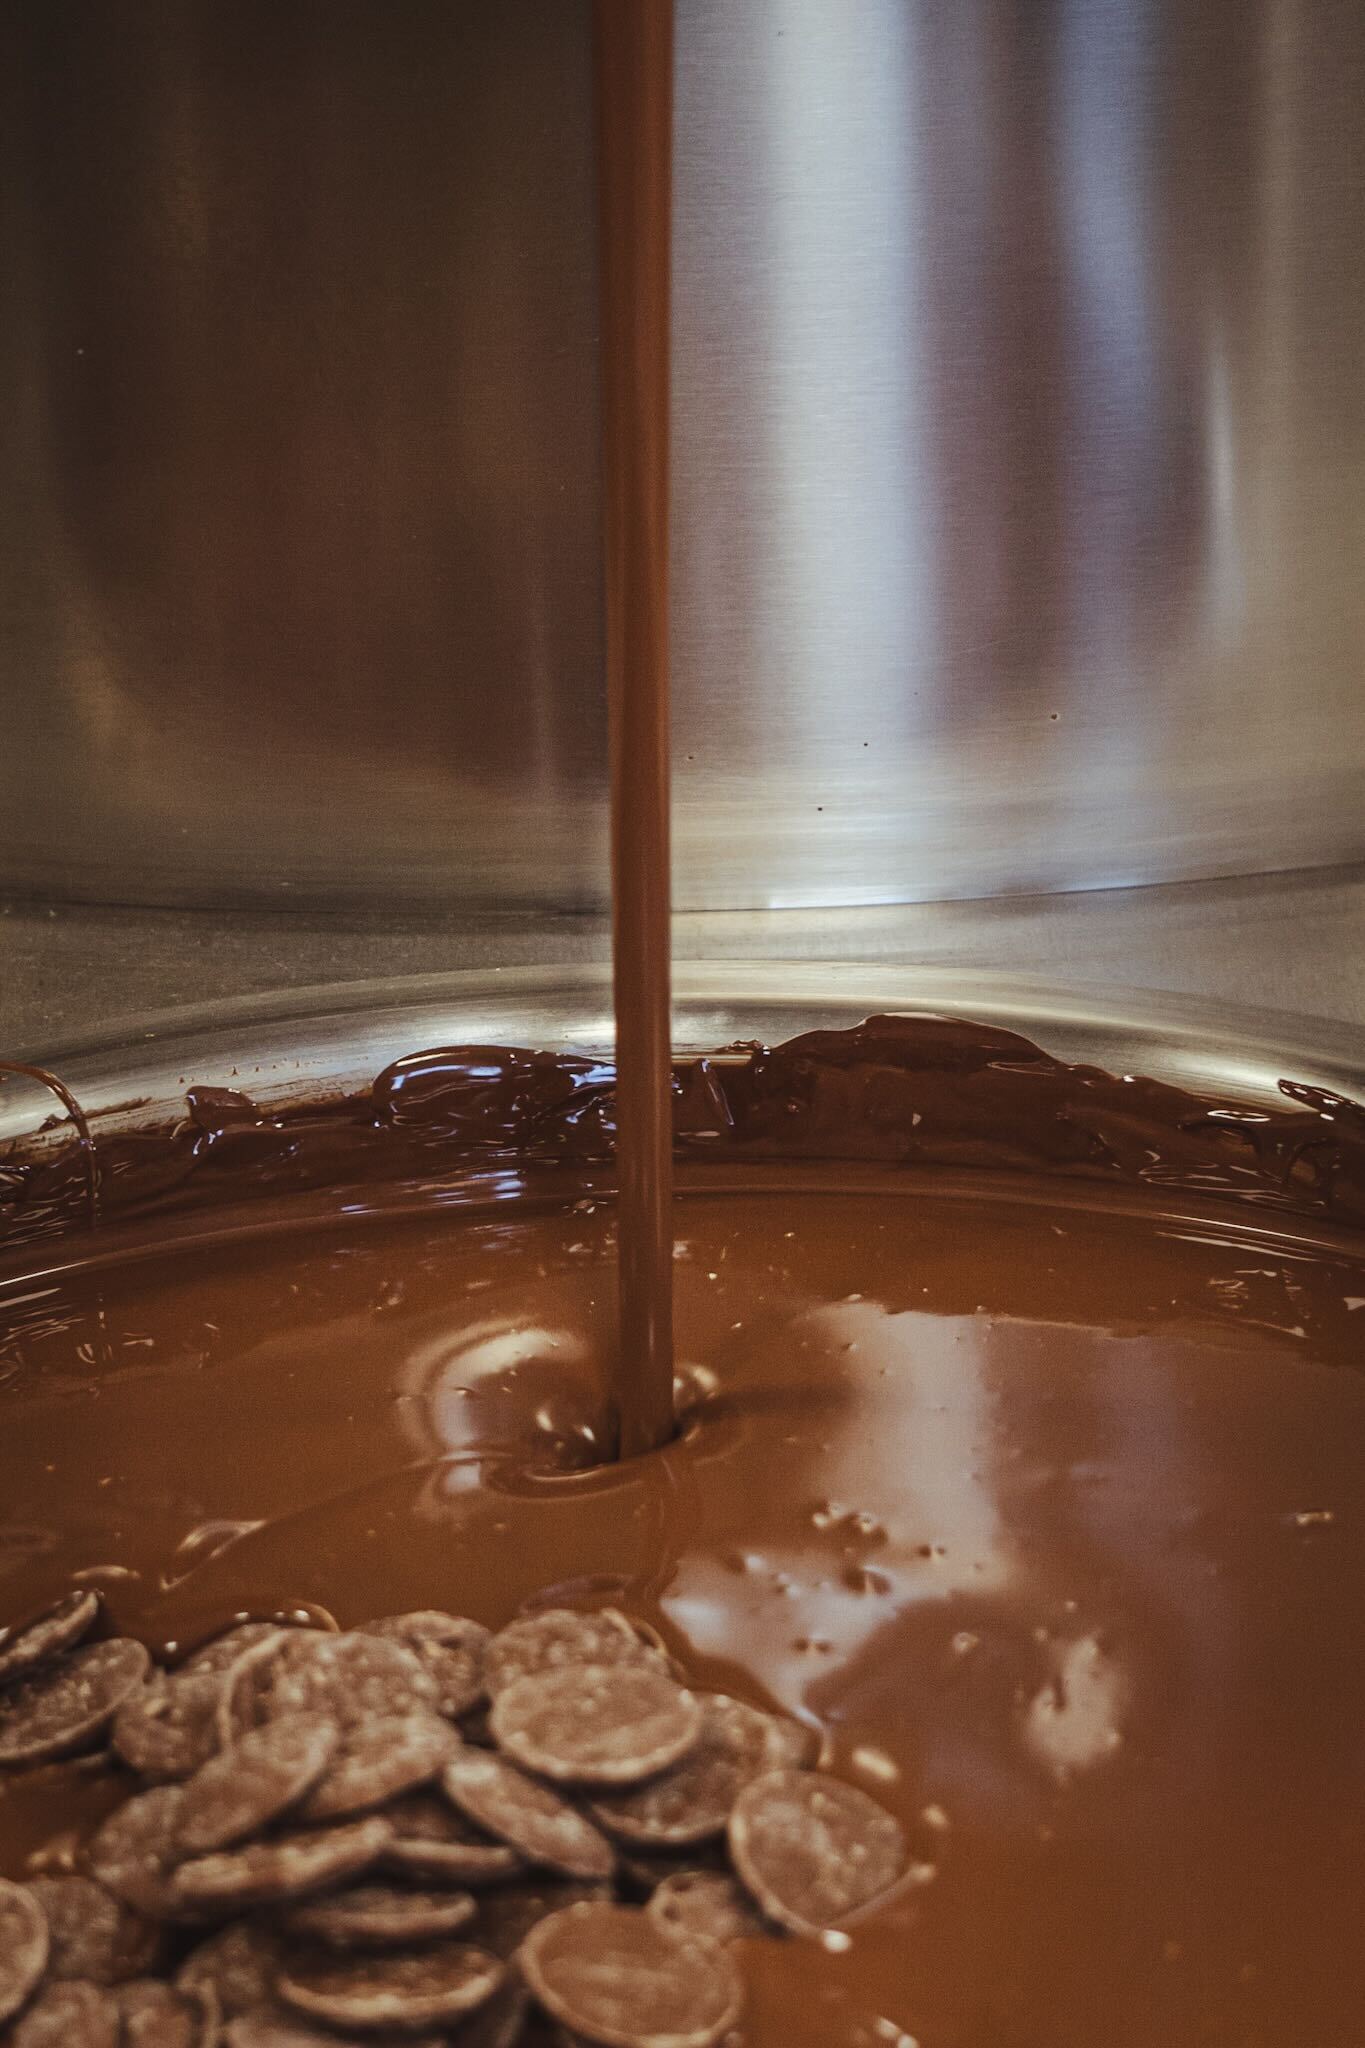 Font de xocolata de l'obrador de Lluc Crusellas, world chocolate masters 